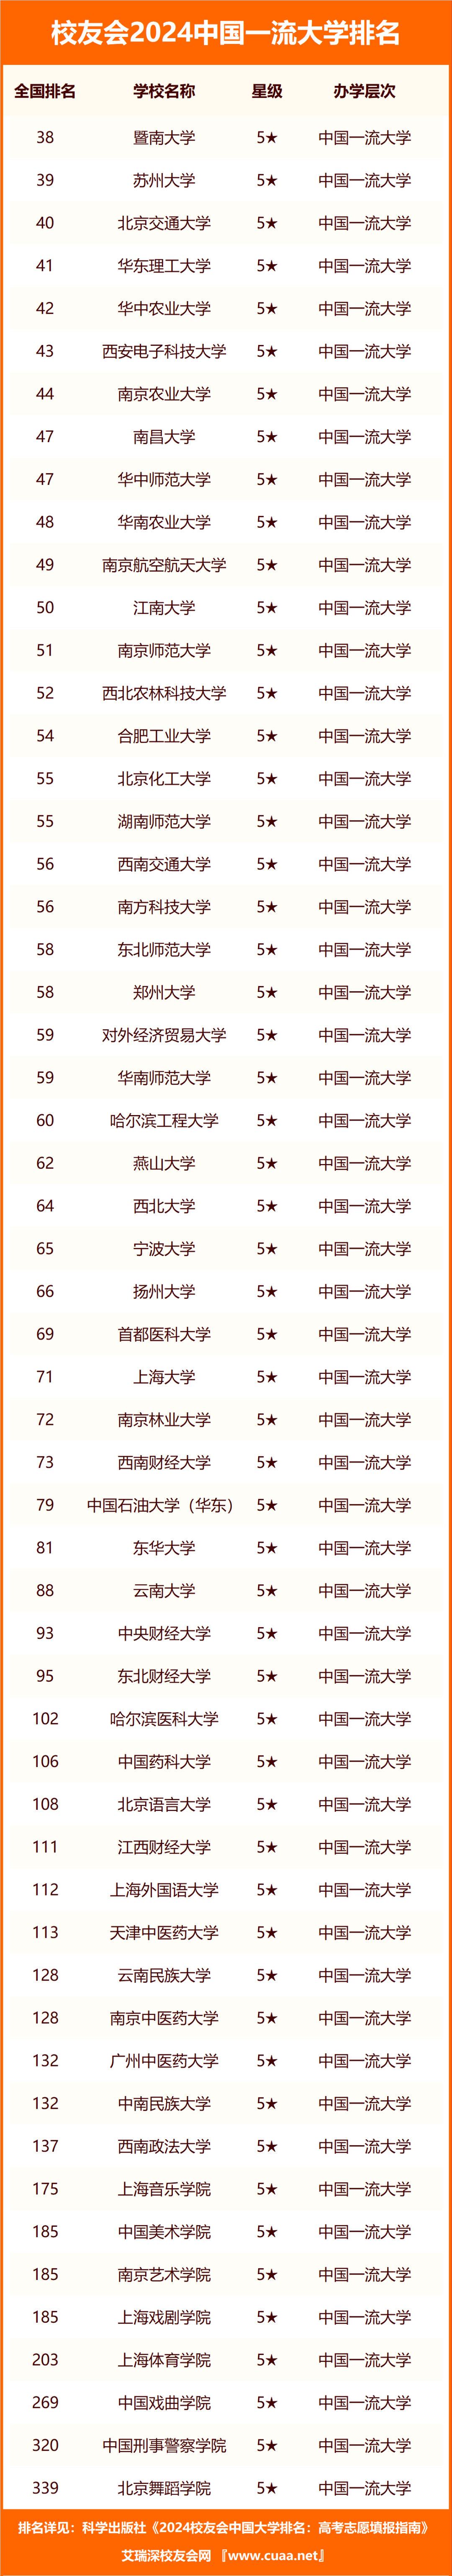 中国石油大学排名(中国石油大学在全国排名)